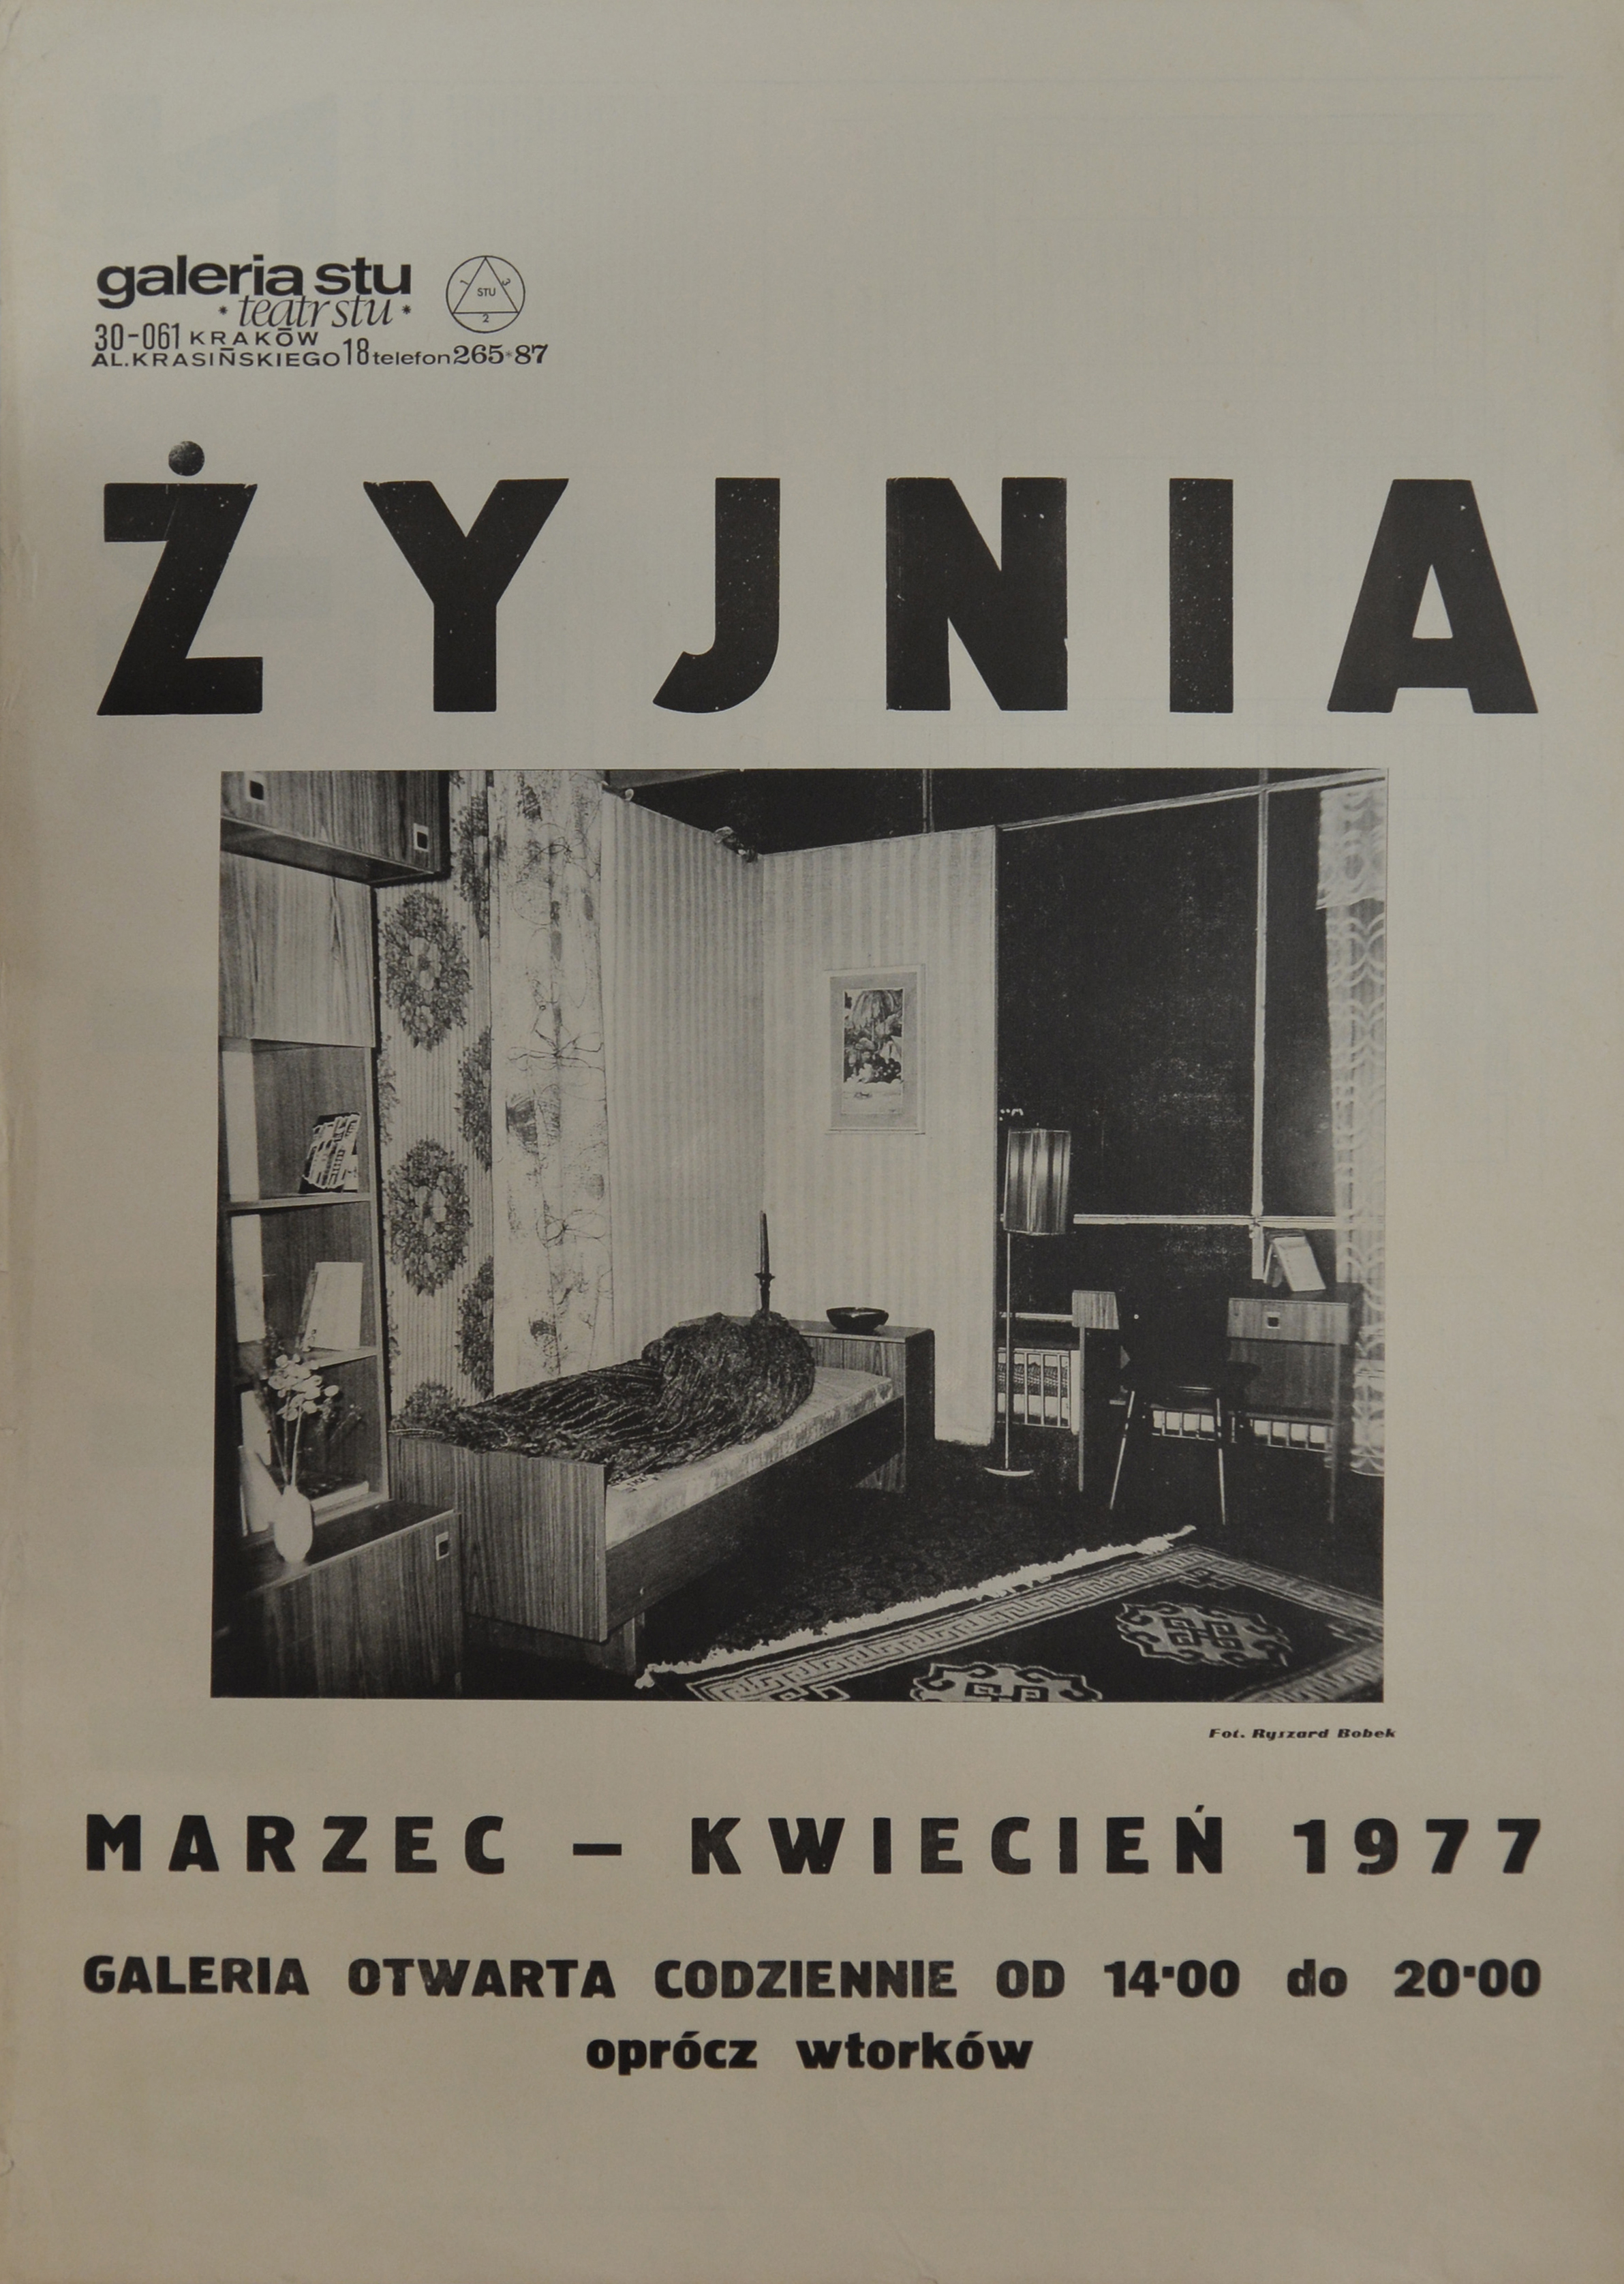 Żyjnia, Galeria stu, 1977